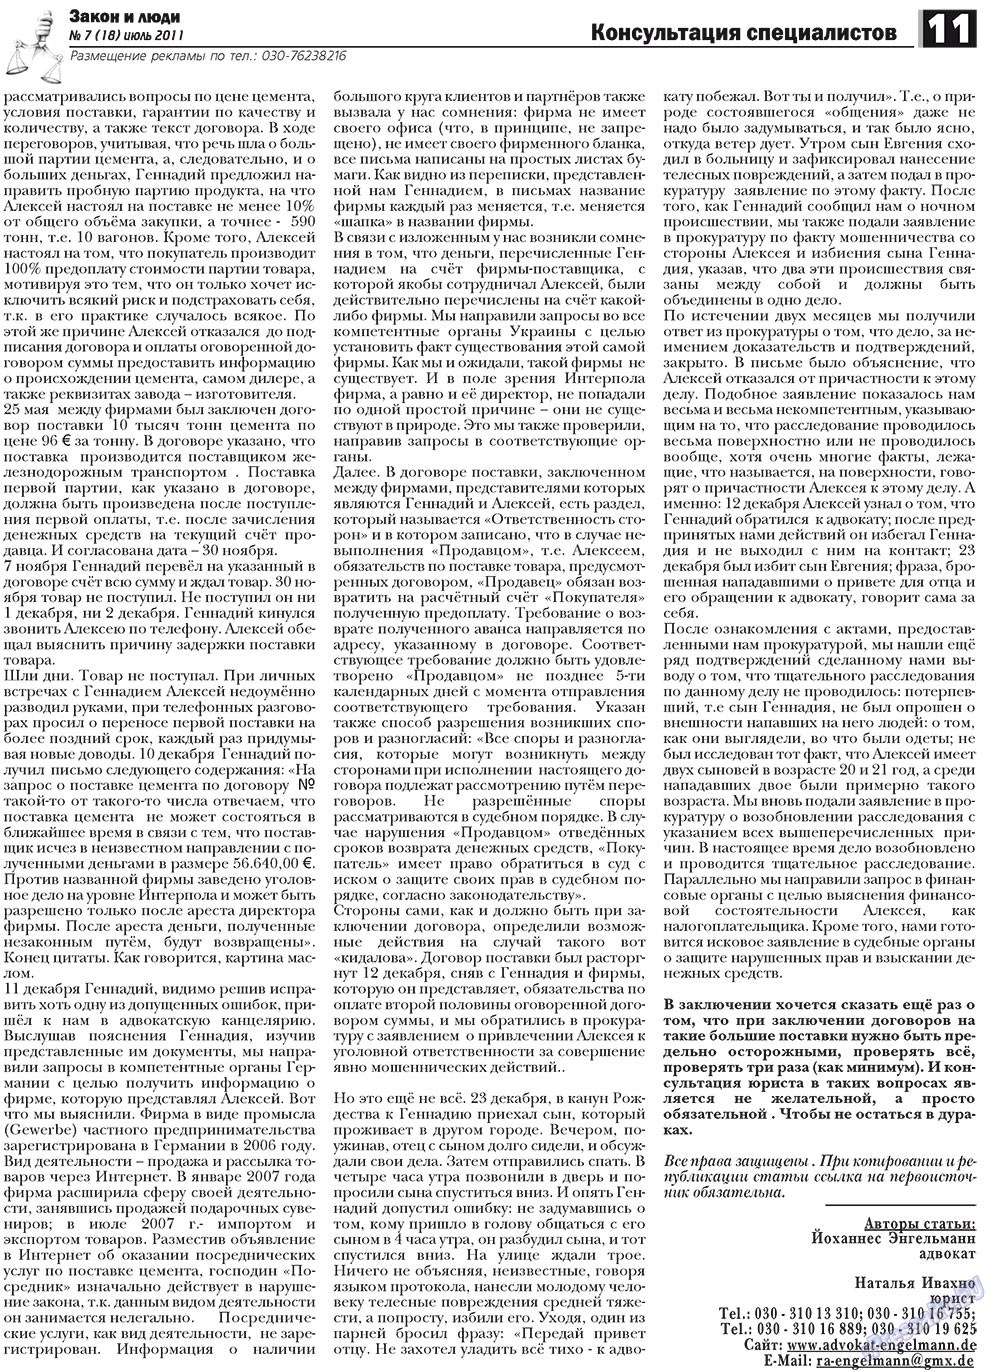 Закон и люди, газета. 2011 №7 стр.11